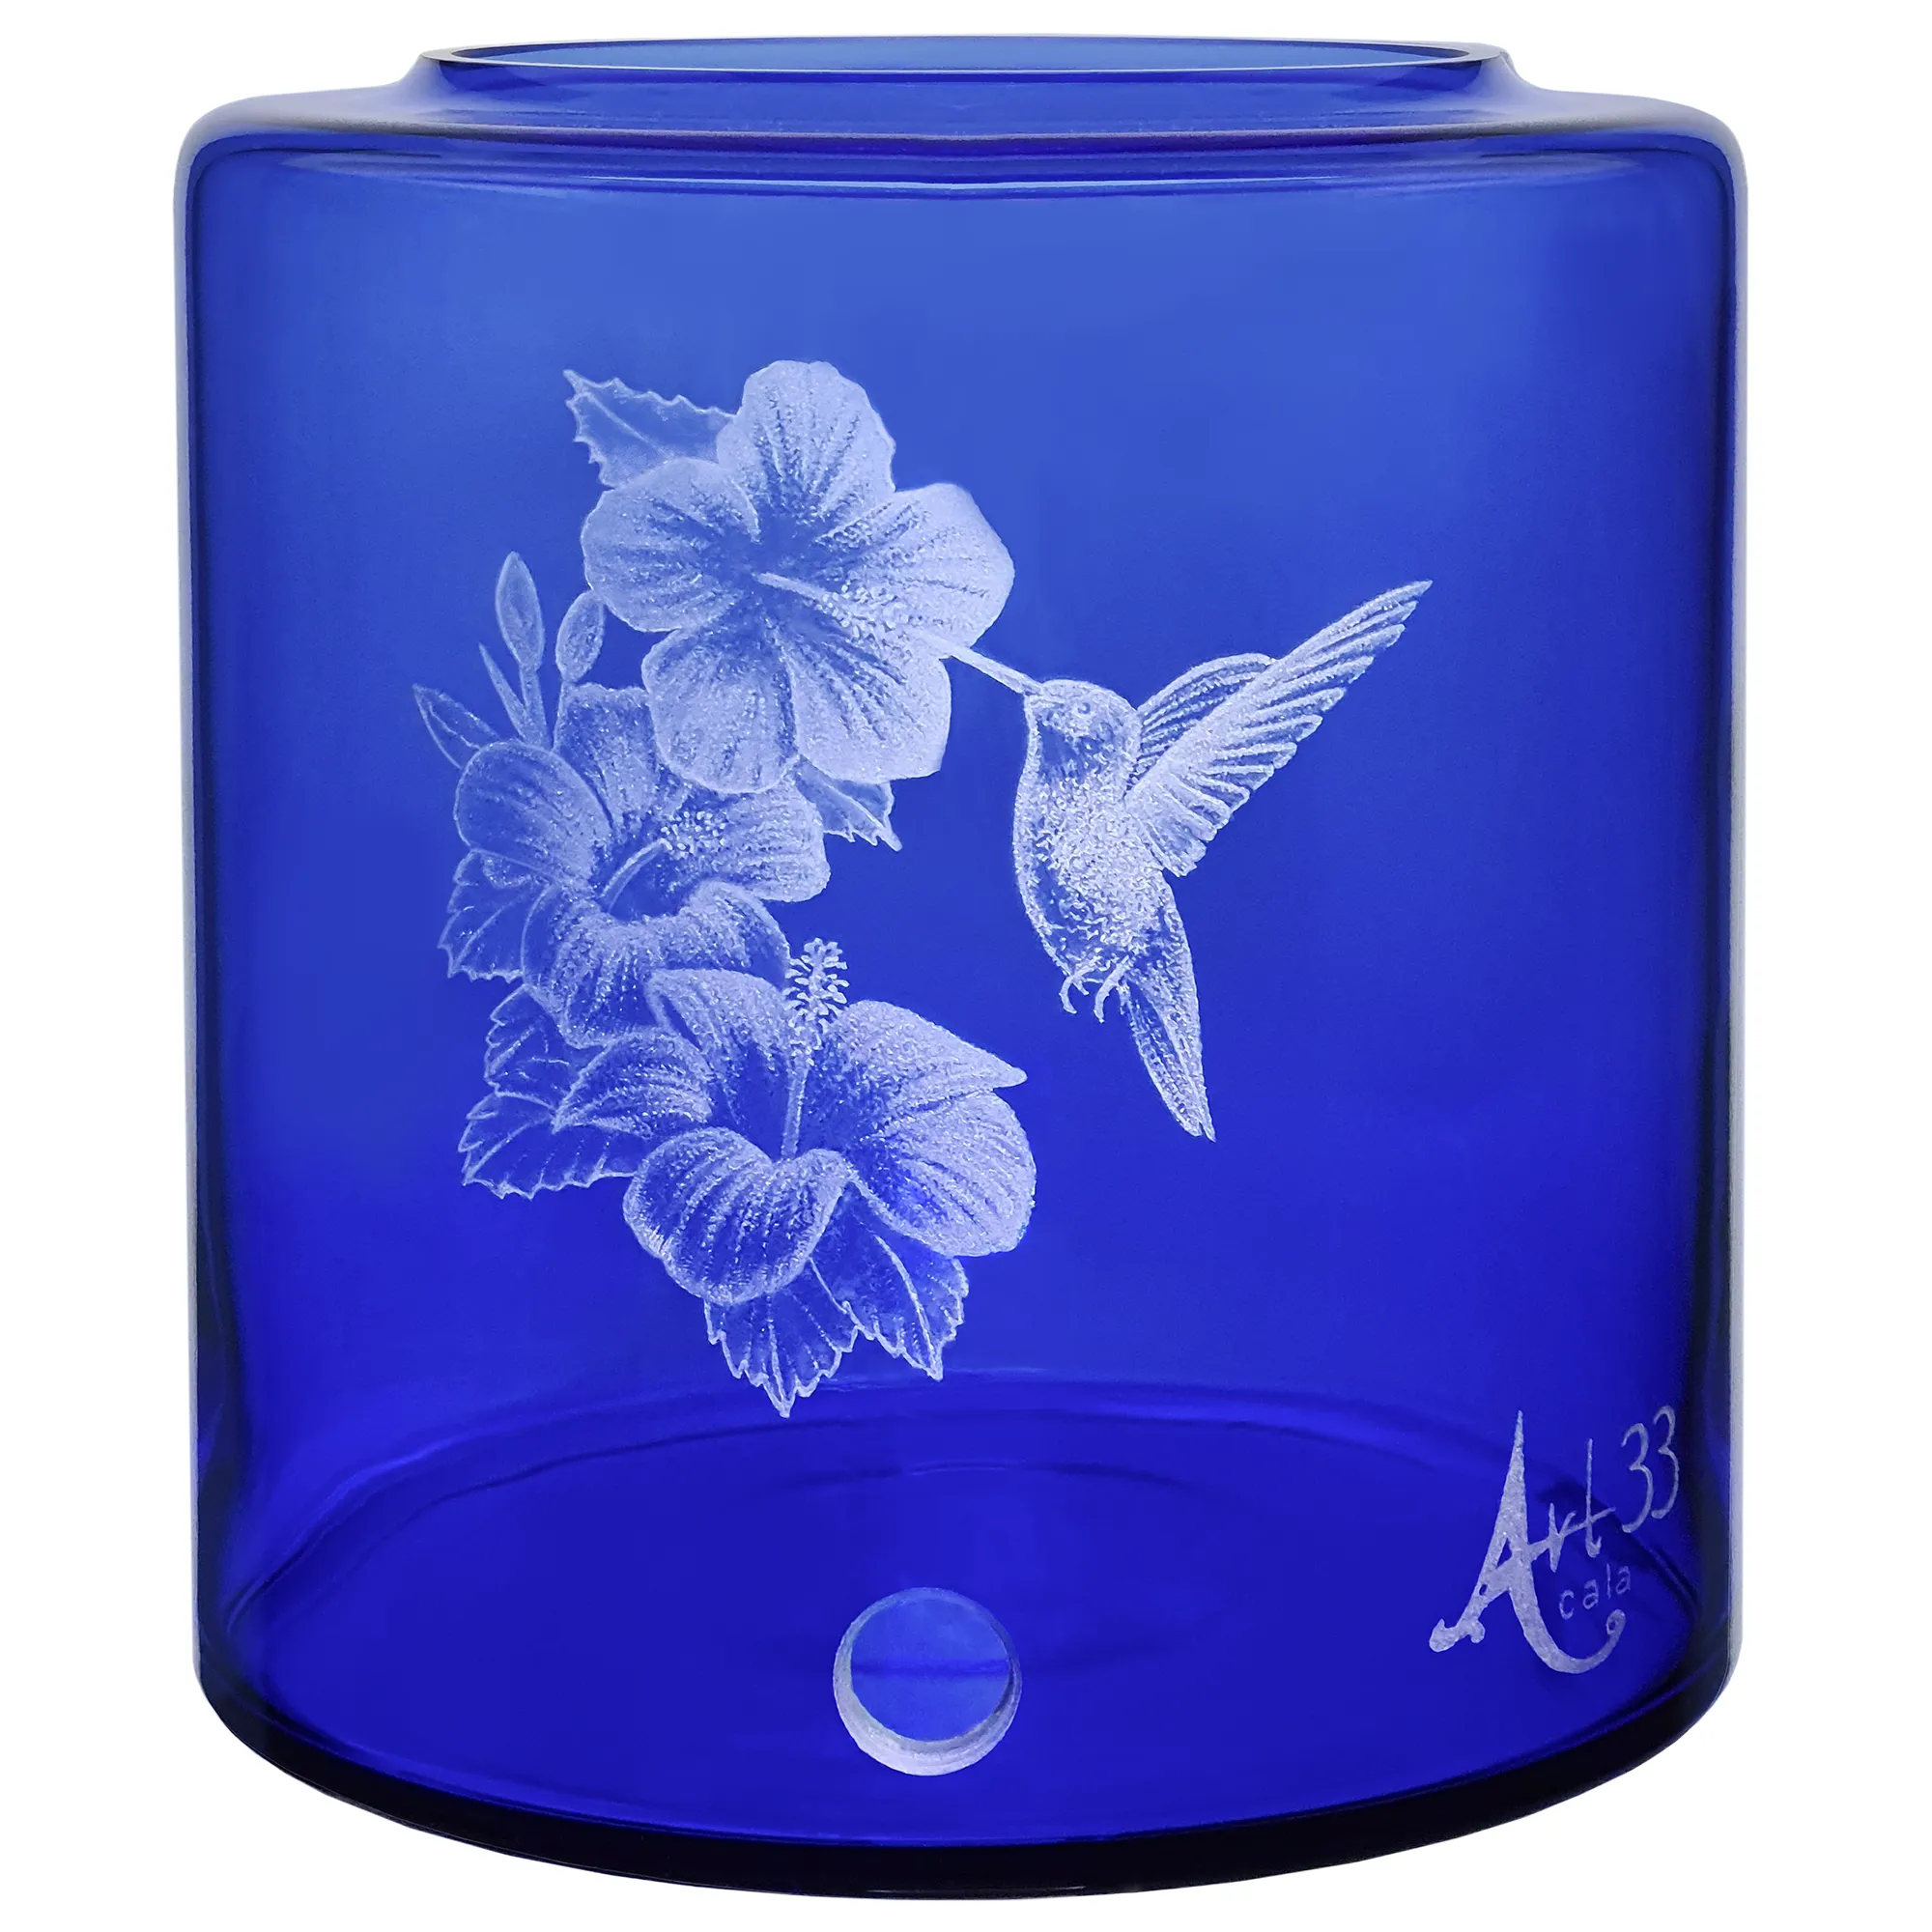 Vorratstank für einen Acala Wasserfilter Mini mit einer Handgravur. Die Gravur zeigt, auf blauem Glas, einen Kolibri der an eine offenen Blüte trinkt.Neben der Blüte sind noch zwei weitere ganz aufgeblühte Blüten.